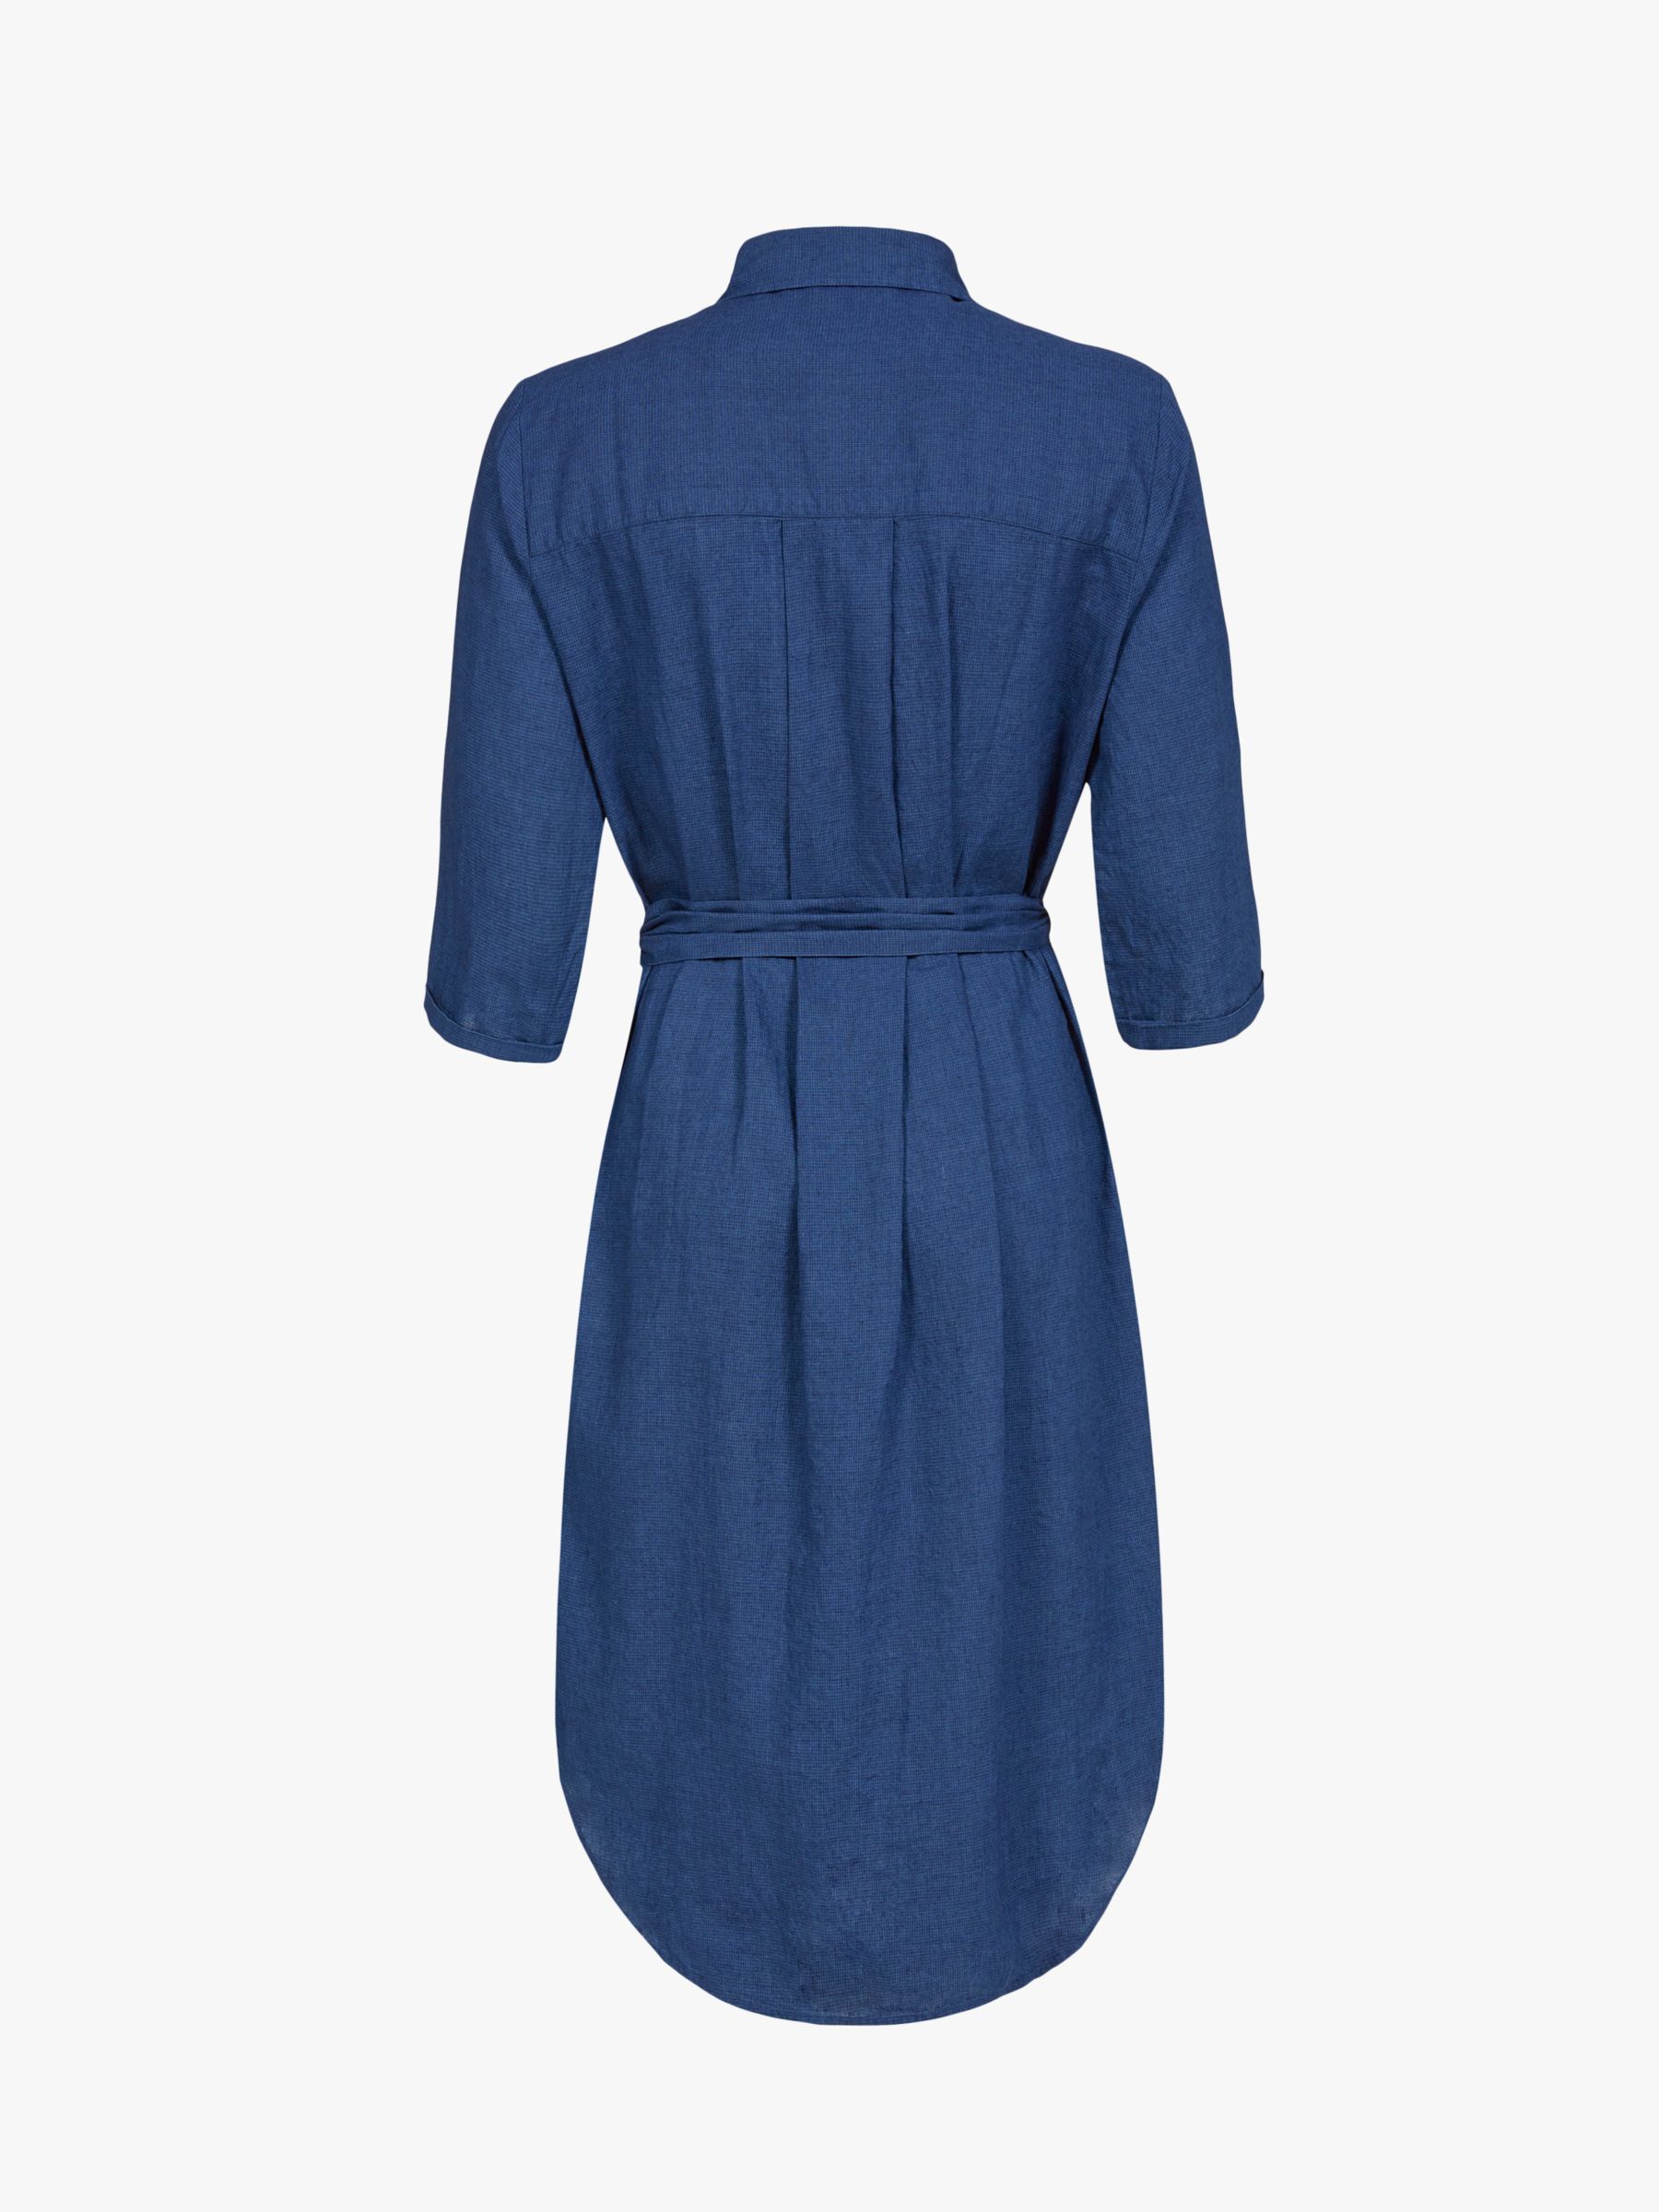 Celtic & Co. Plain Cotton-Linen Shirt Dress, Navy, 8